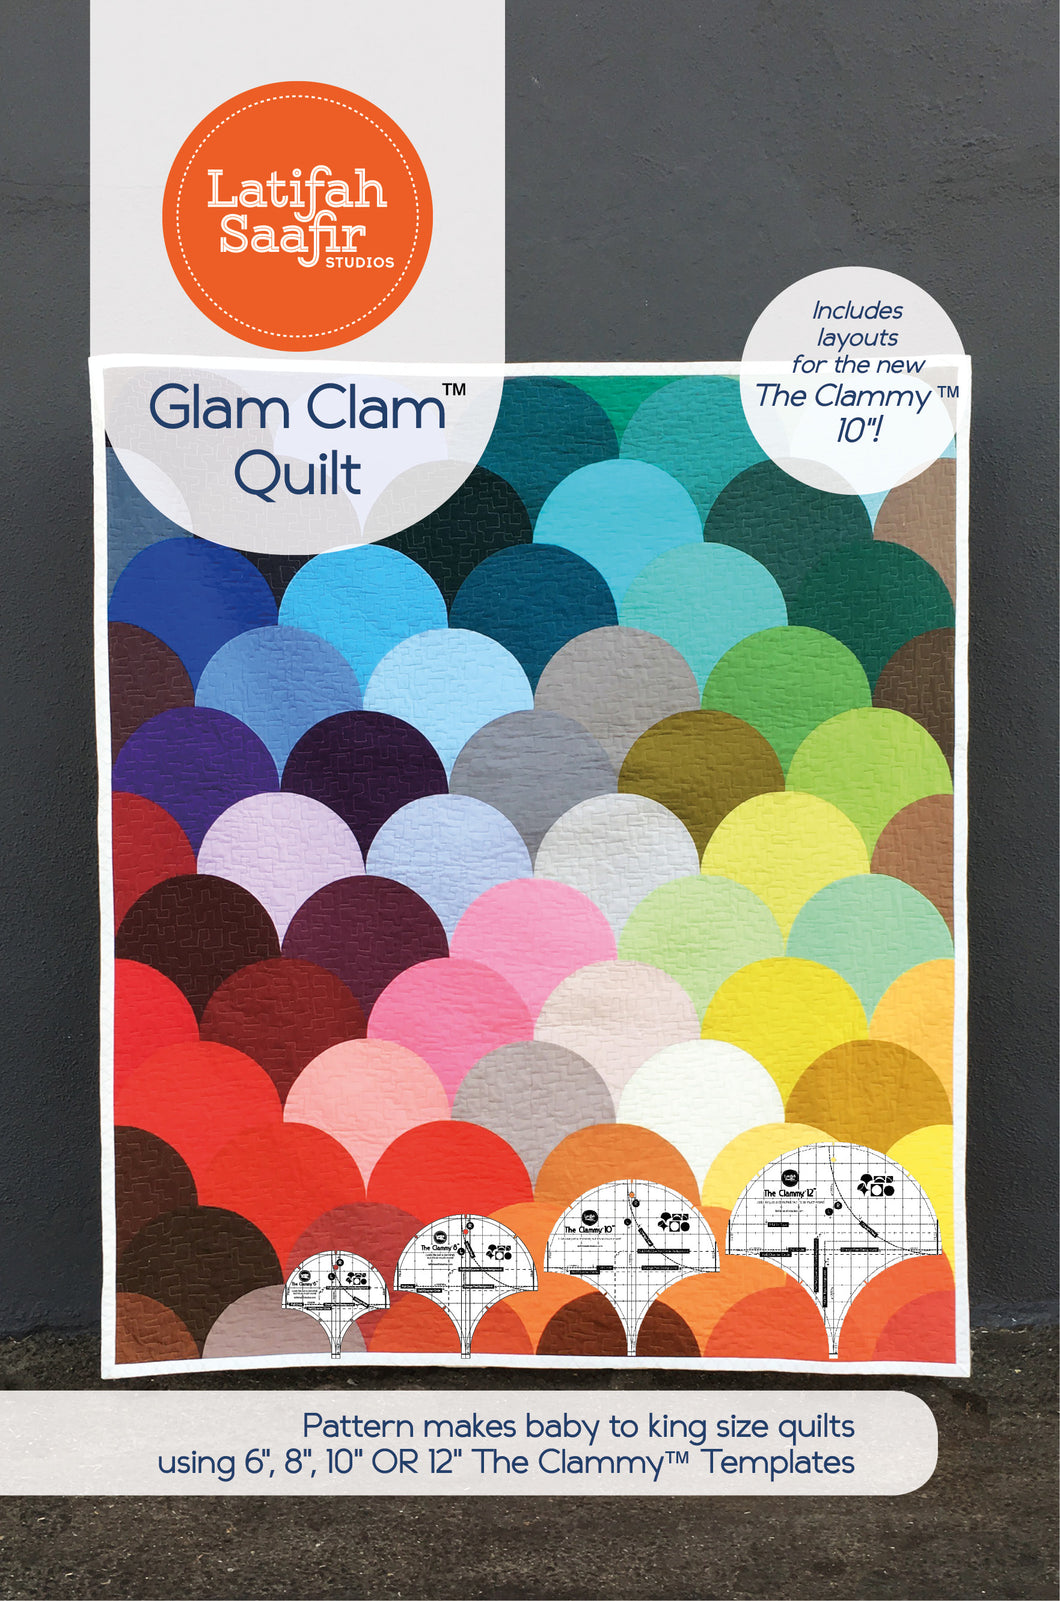 Glam Clam Quilt